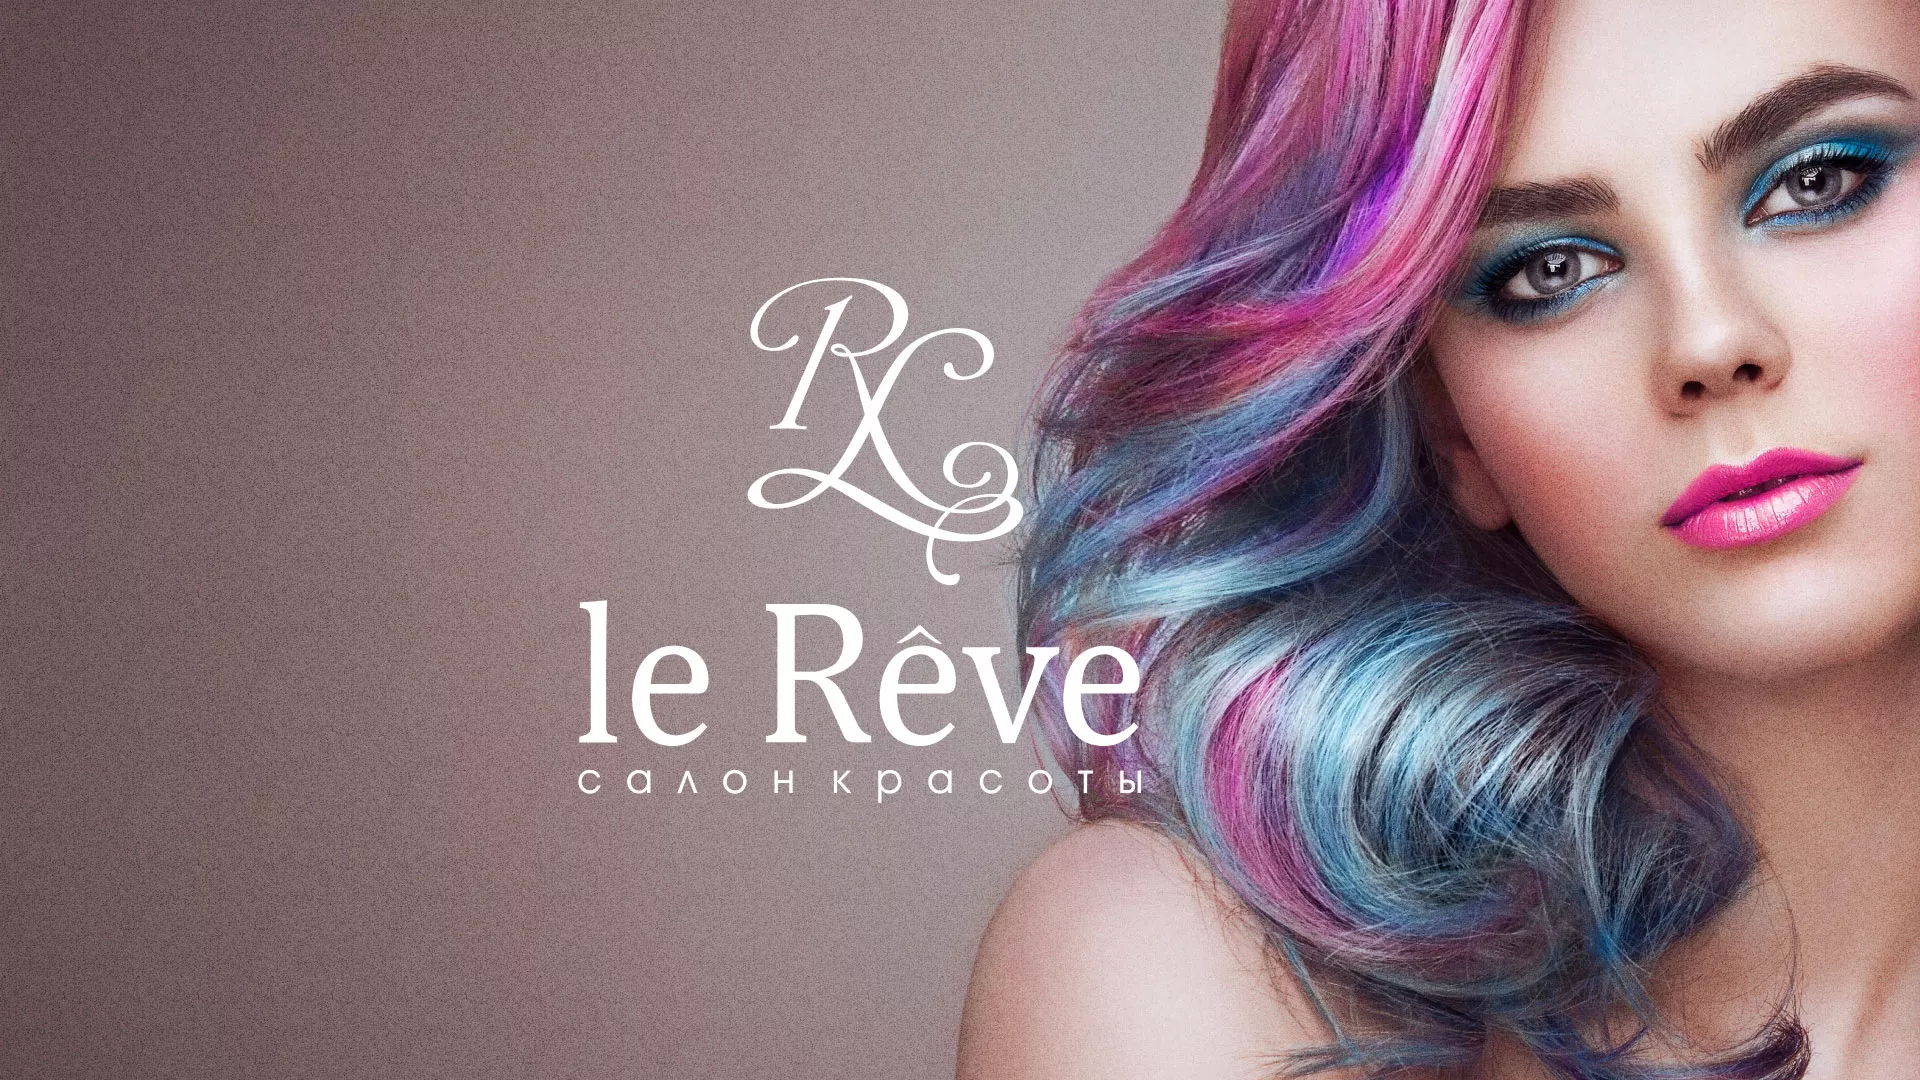 Создание сайта для салона красоты «Le Reve» в Павлово